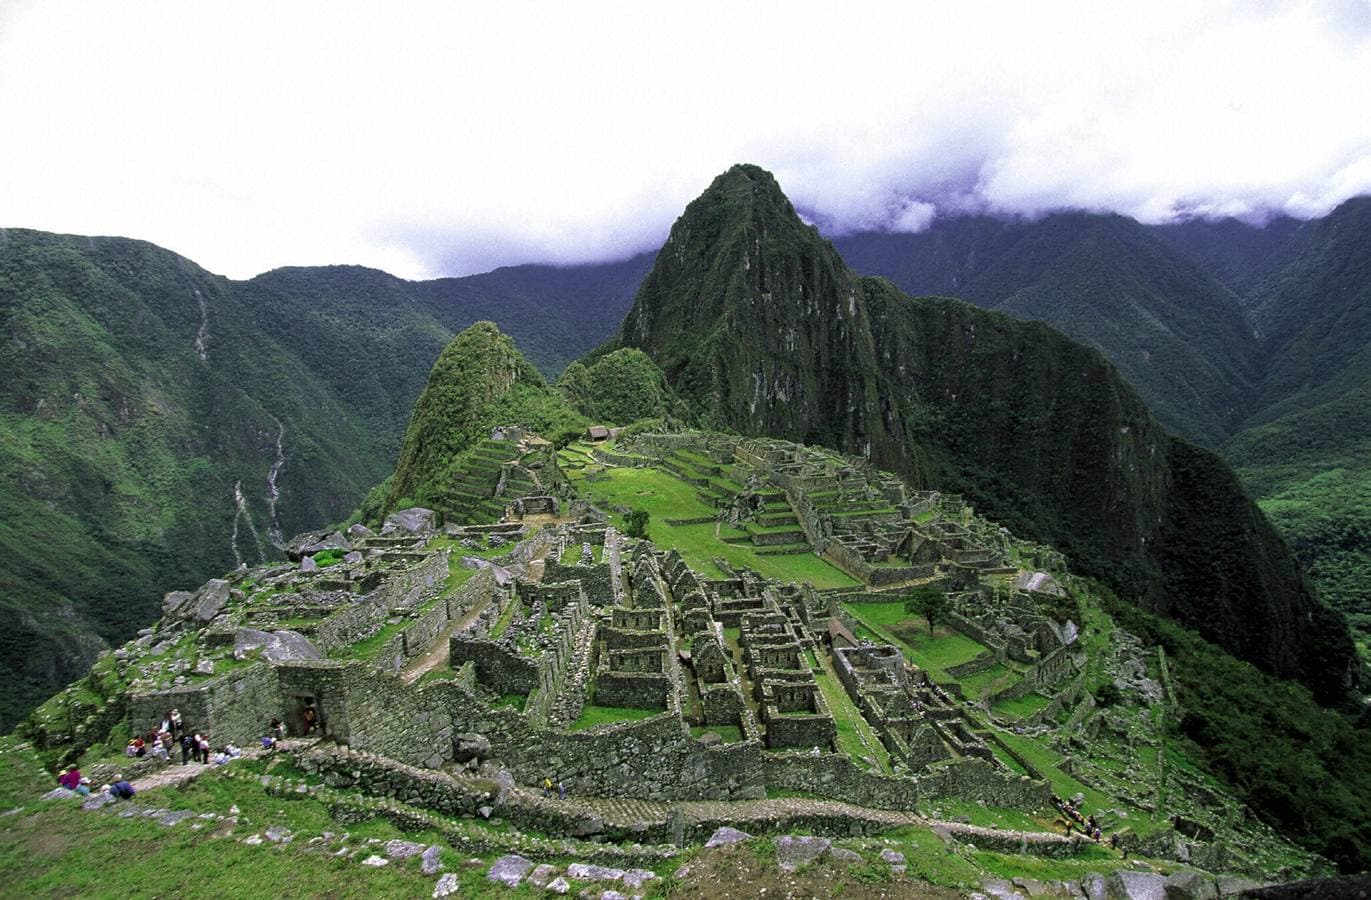 La ciudad inca de Machu Pichu en Cuzco (Perú). Ubicada a 2.430 metros de altura en un paraje de gran belleza, en medio de un bosque tropical de montaña, fue probablemente la realización arquitectónica más asombrosa del Imperio Inca en su apogeo. Está en la Lista del Patrimonio de la Humanidad de la Unesco desde 1983.